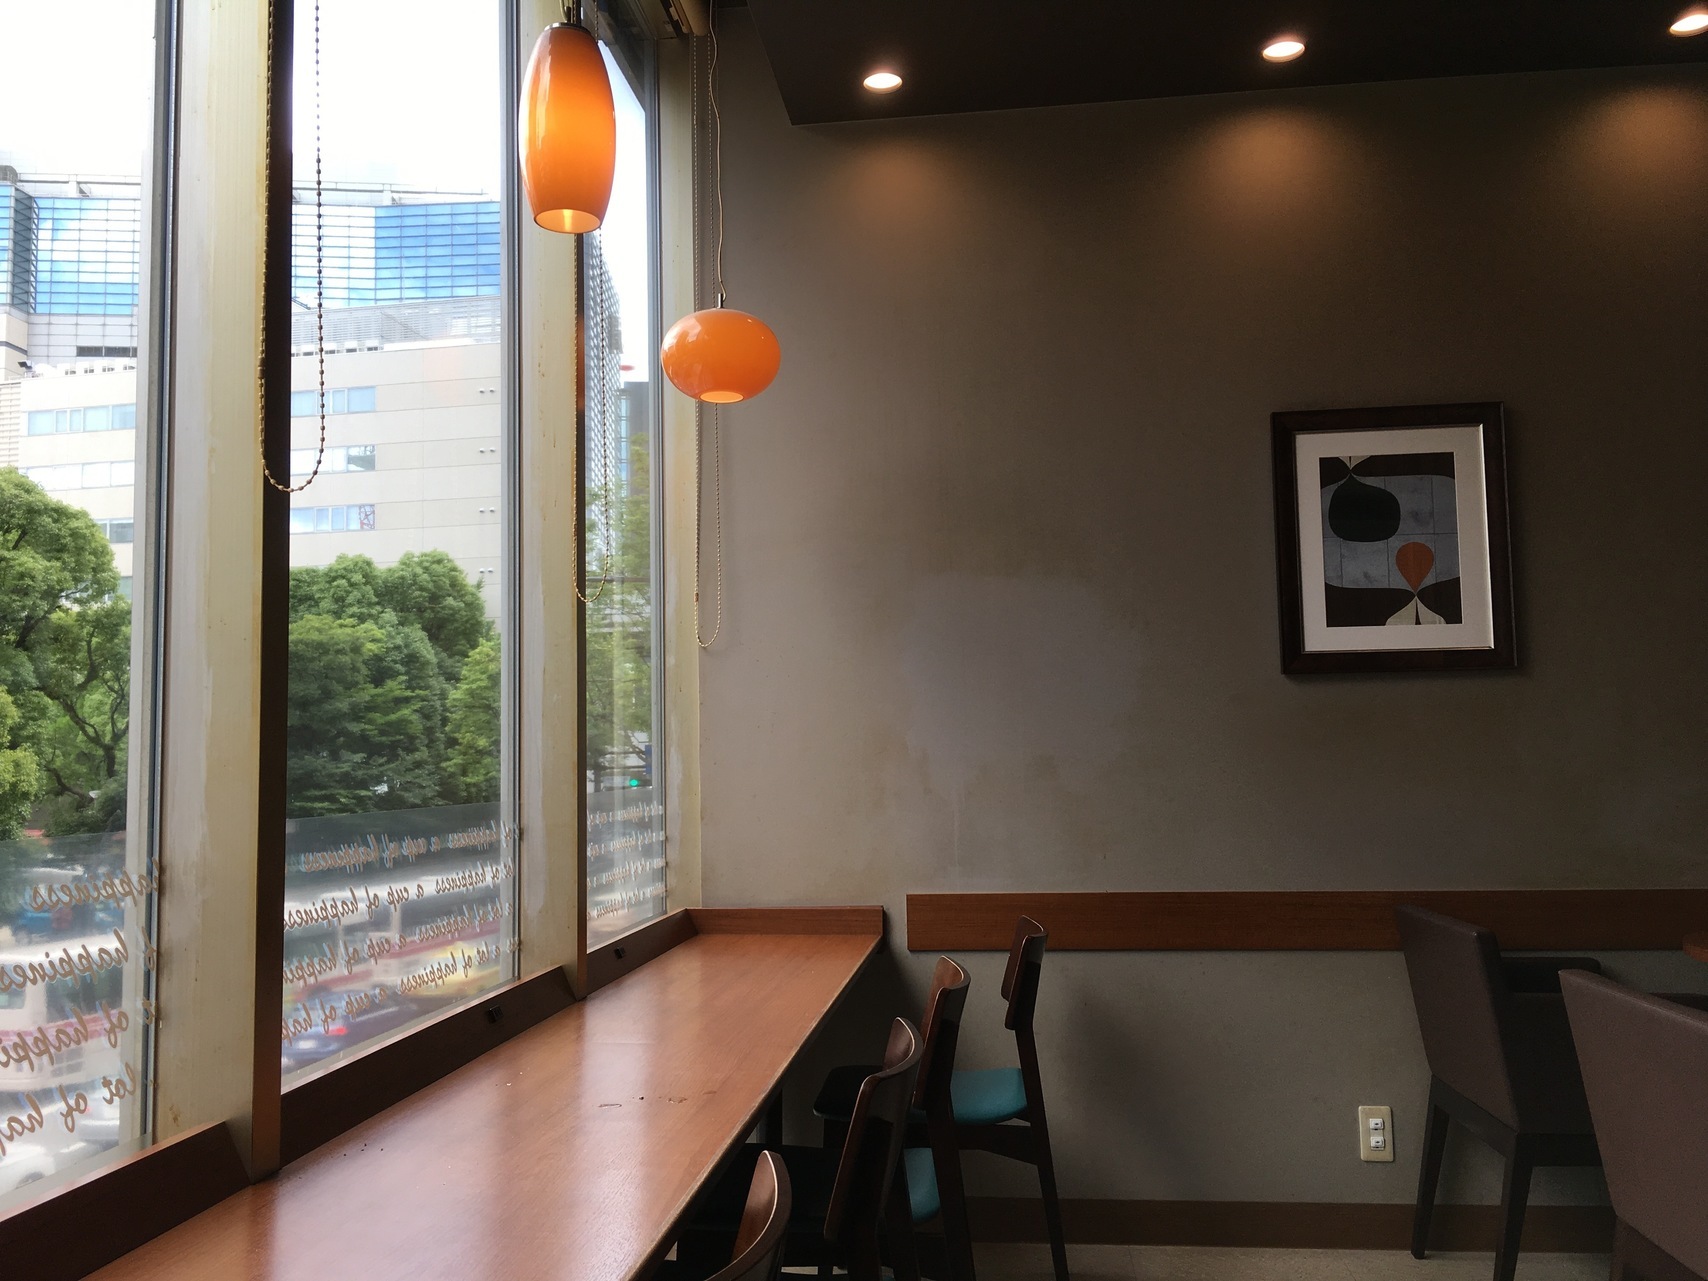 2020年10月最新 天神駅周辺で電源 Wi Fiがあるカフェ16選 みんなの貸会議室 福岡市 博多 天神の貸会議室